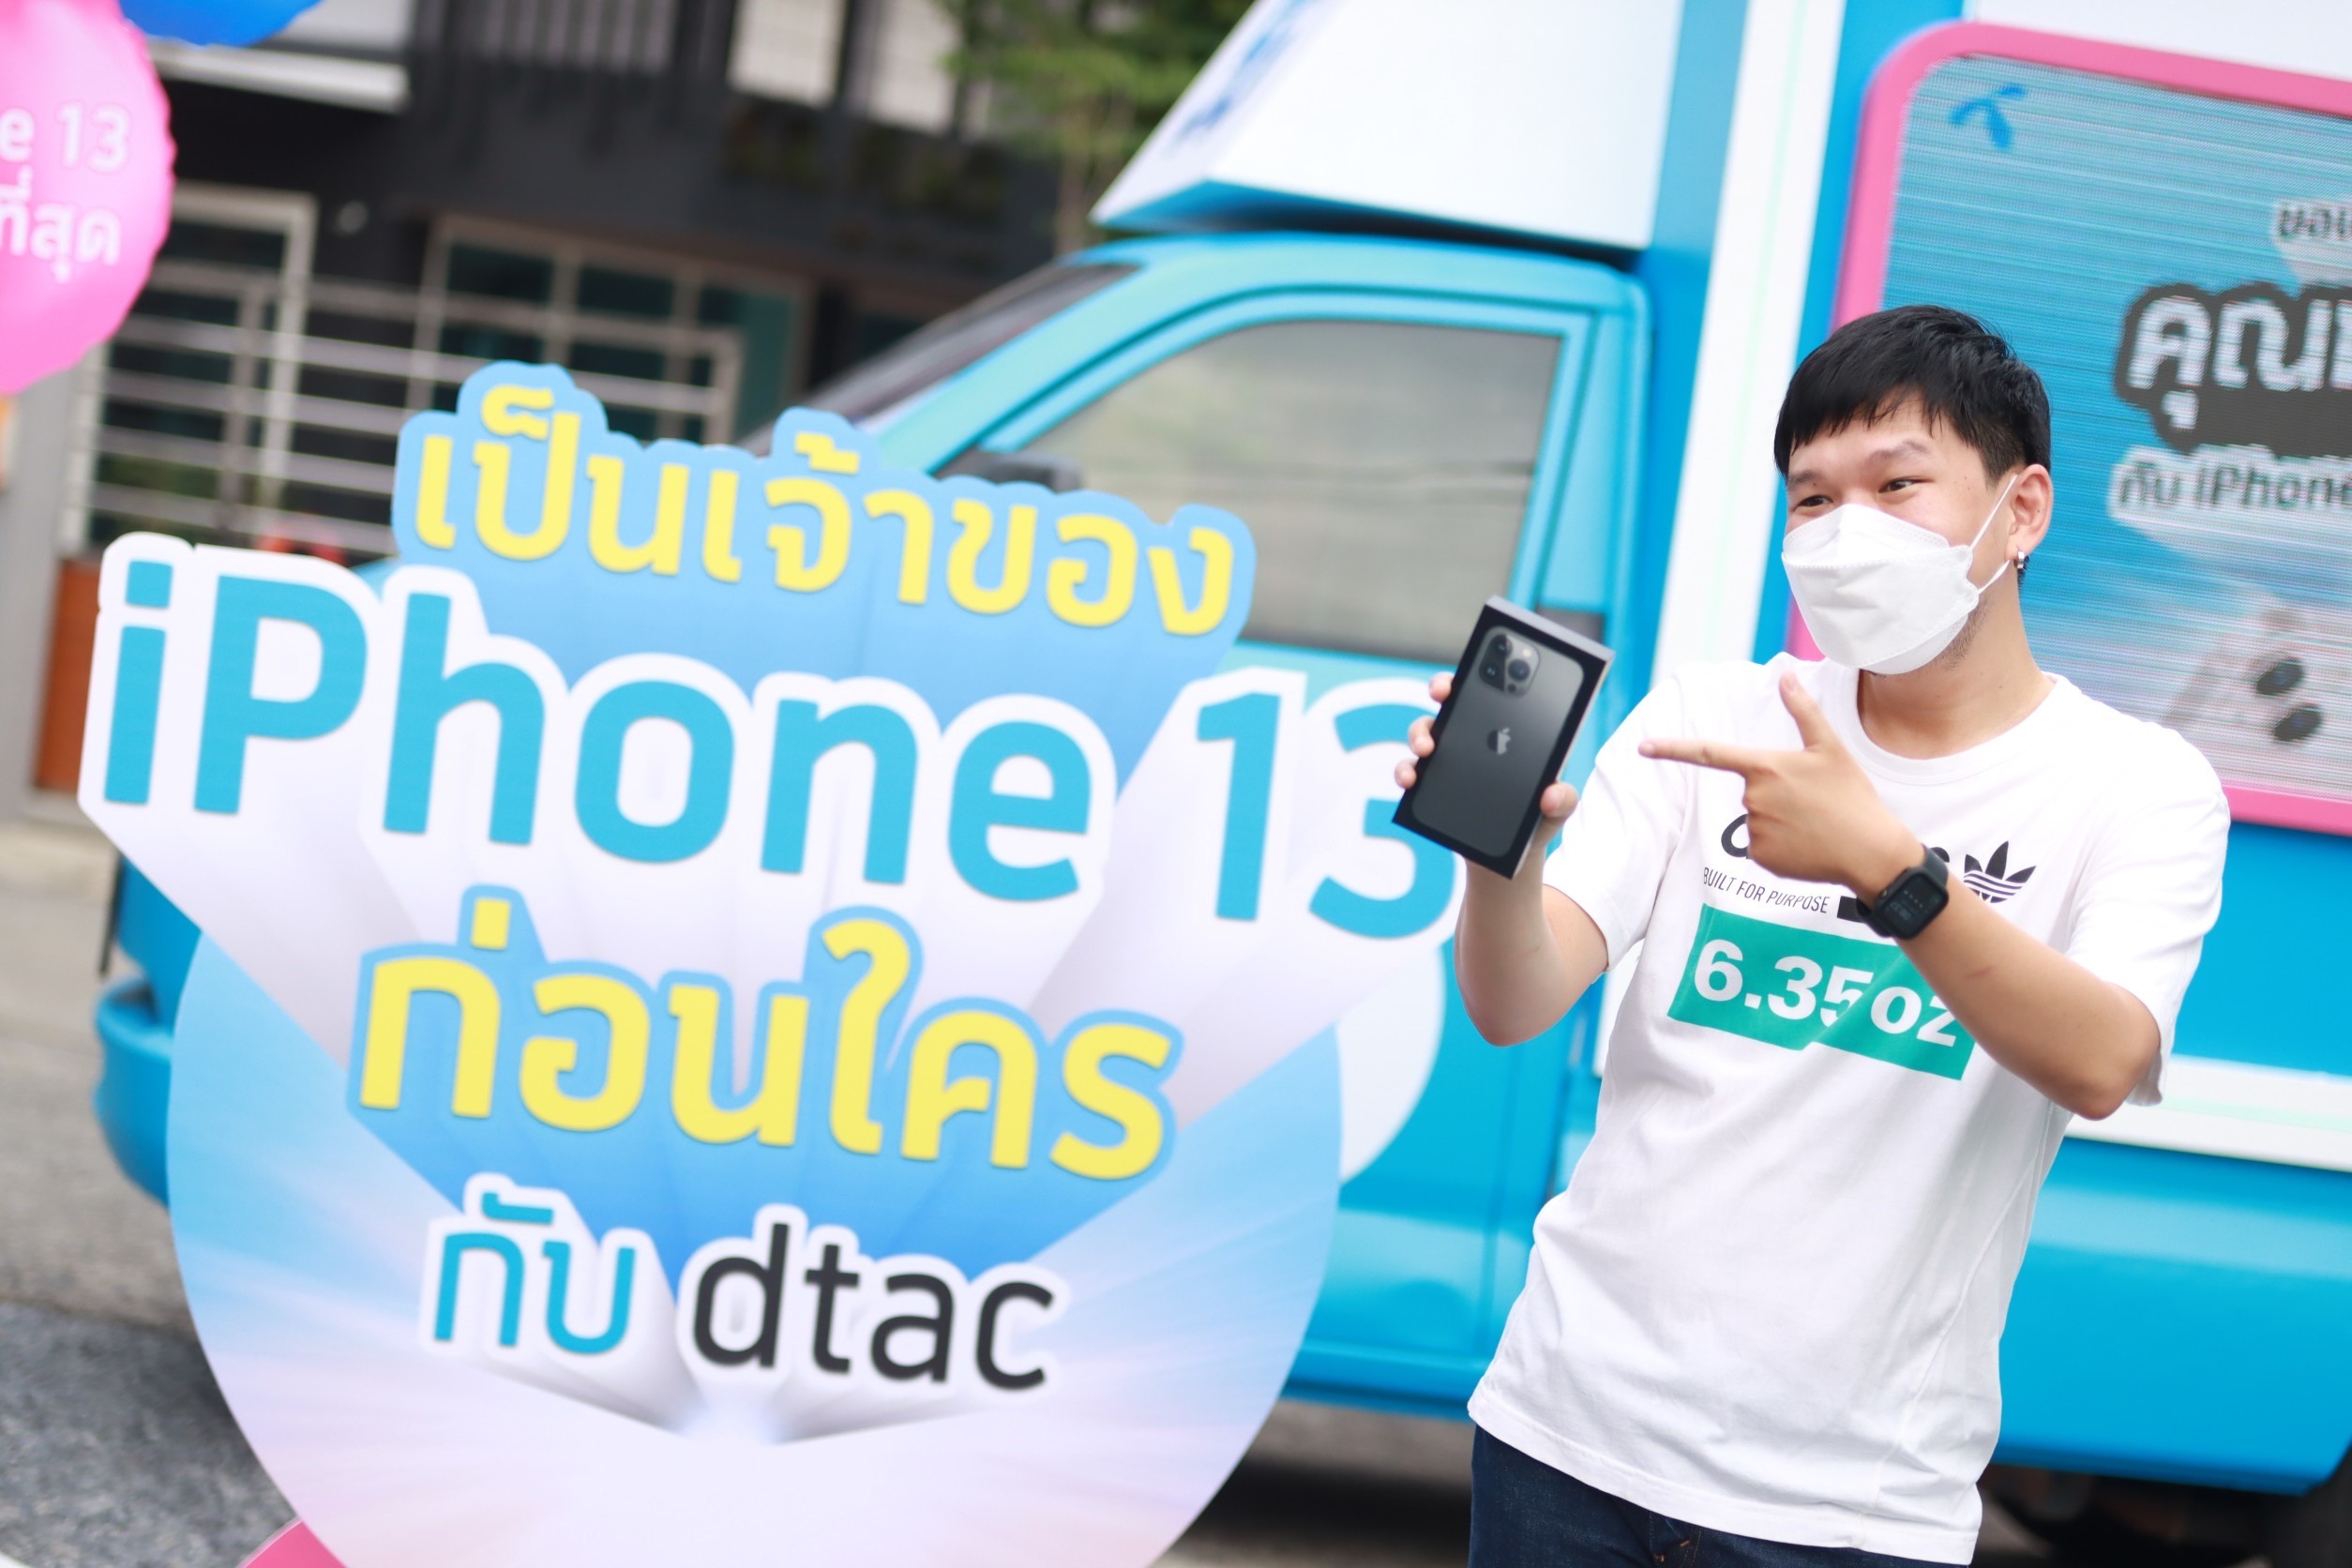 ปีที่แล้วว่าดี ปีนี้ดีกว่า ดีแทคส่งมอบ iPhone 13 ถึงมือลูกค้าชาวไทย การันตีส่งฟรีถึงบ้าน และส่งมอบเครื่องให้ลูกค้าที่เข้ามารับเครื่องเองที่ศูนย์บริการดีแทคอย่างปลอดภัย